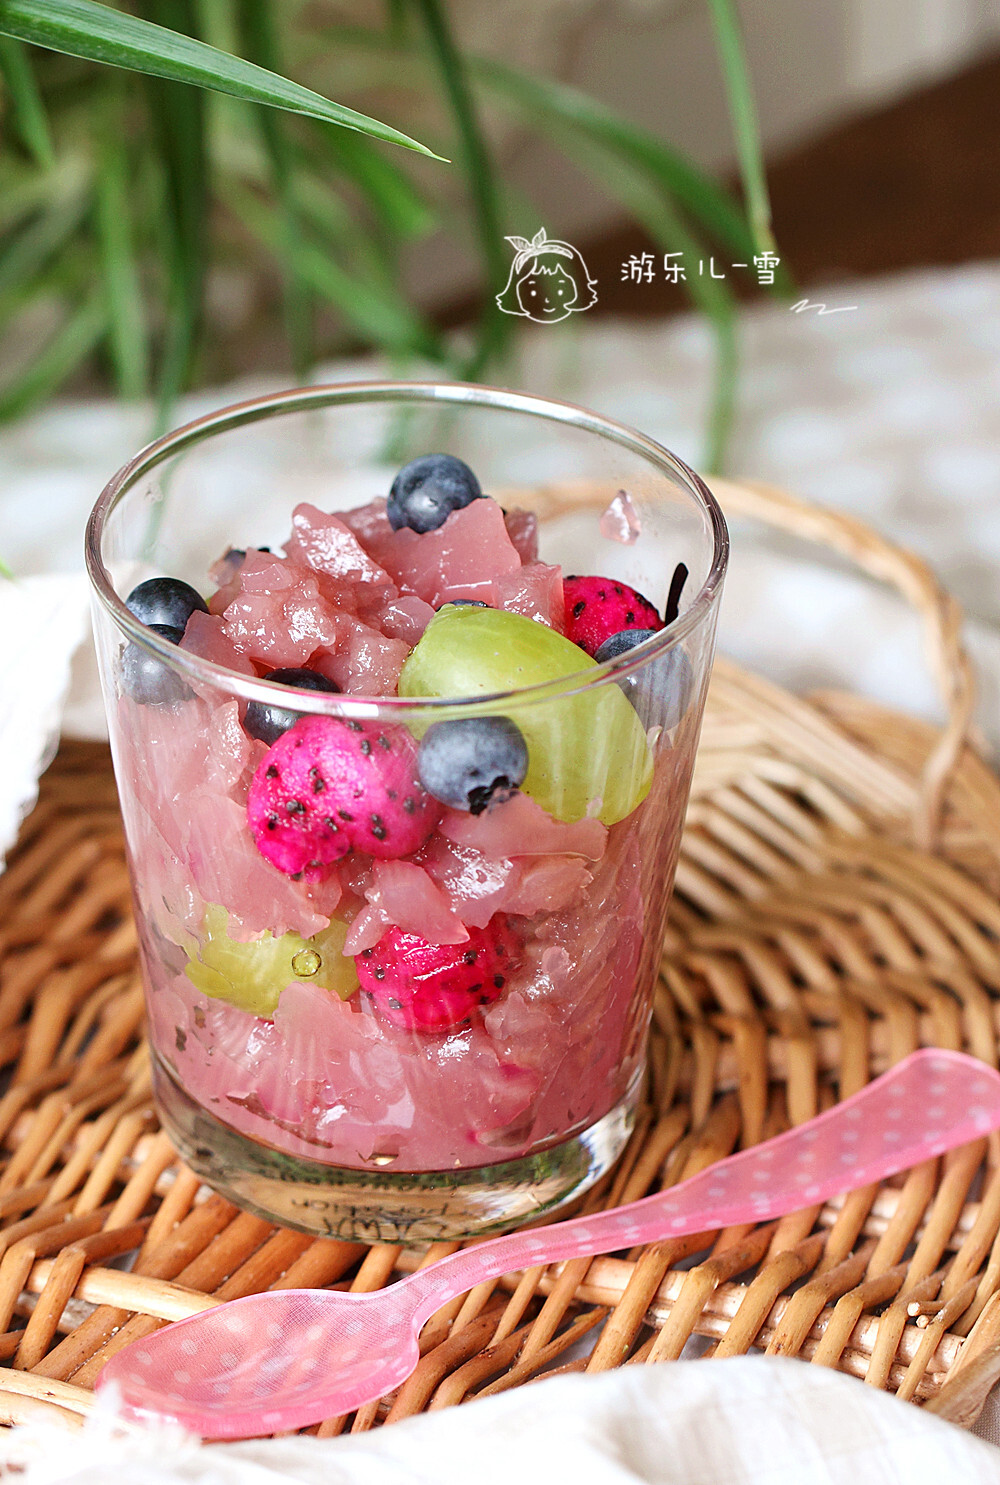 #葡萄水果冻# 第二弹快手小甜品！
夏天好爱吃冰冰凉的果冻 。
自己做无添加，还简单，不加一滴水，水果味浓到不行。
做好可以单独吃，也可以搭配家里现有的水果一起享受，发挥你的想象吧！
方子已发